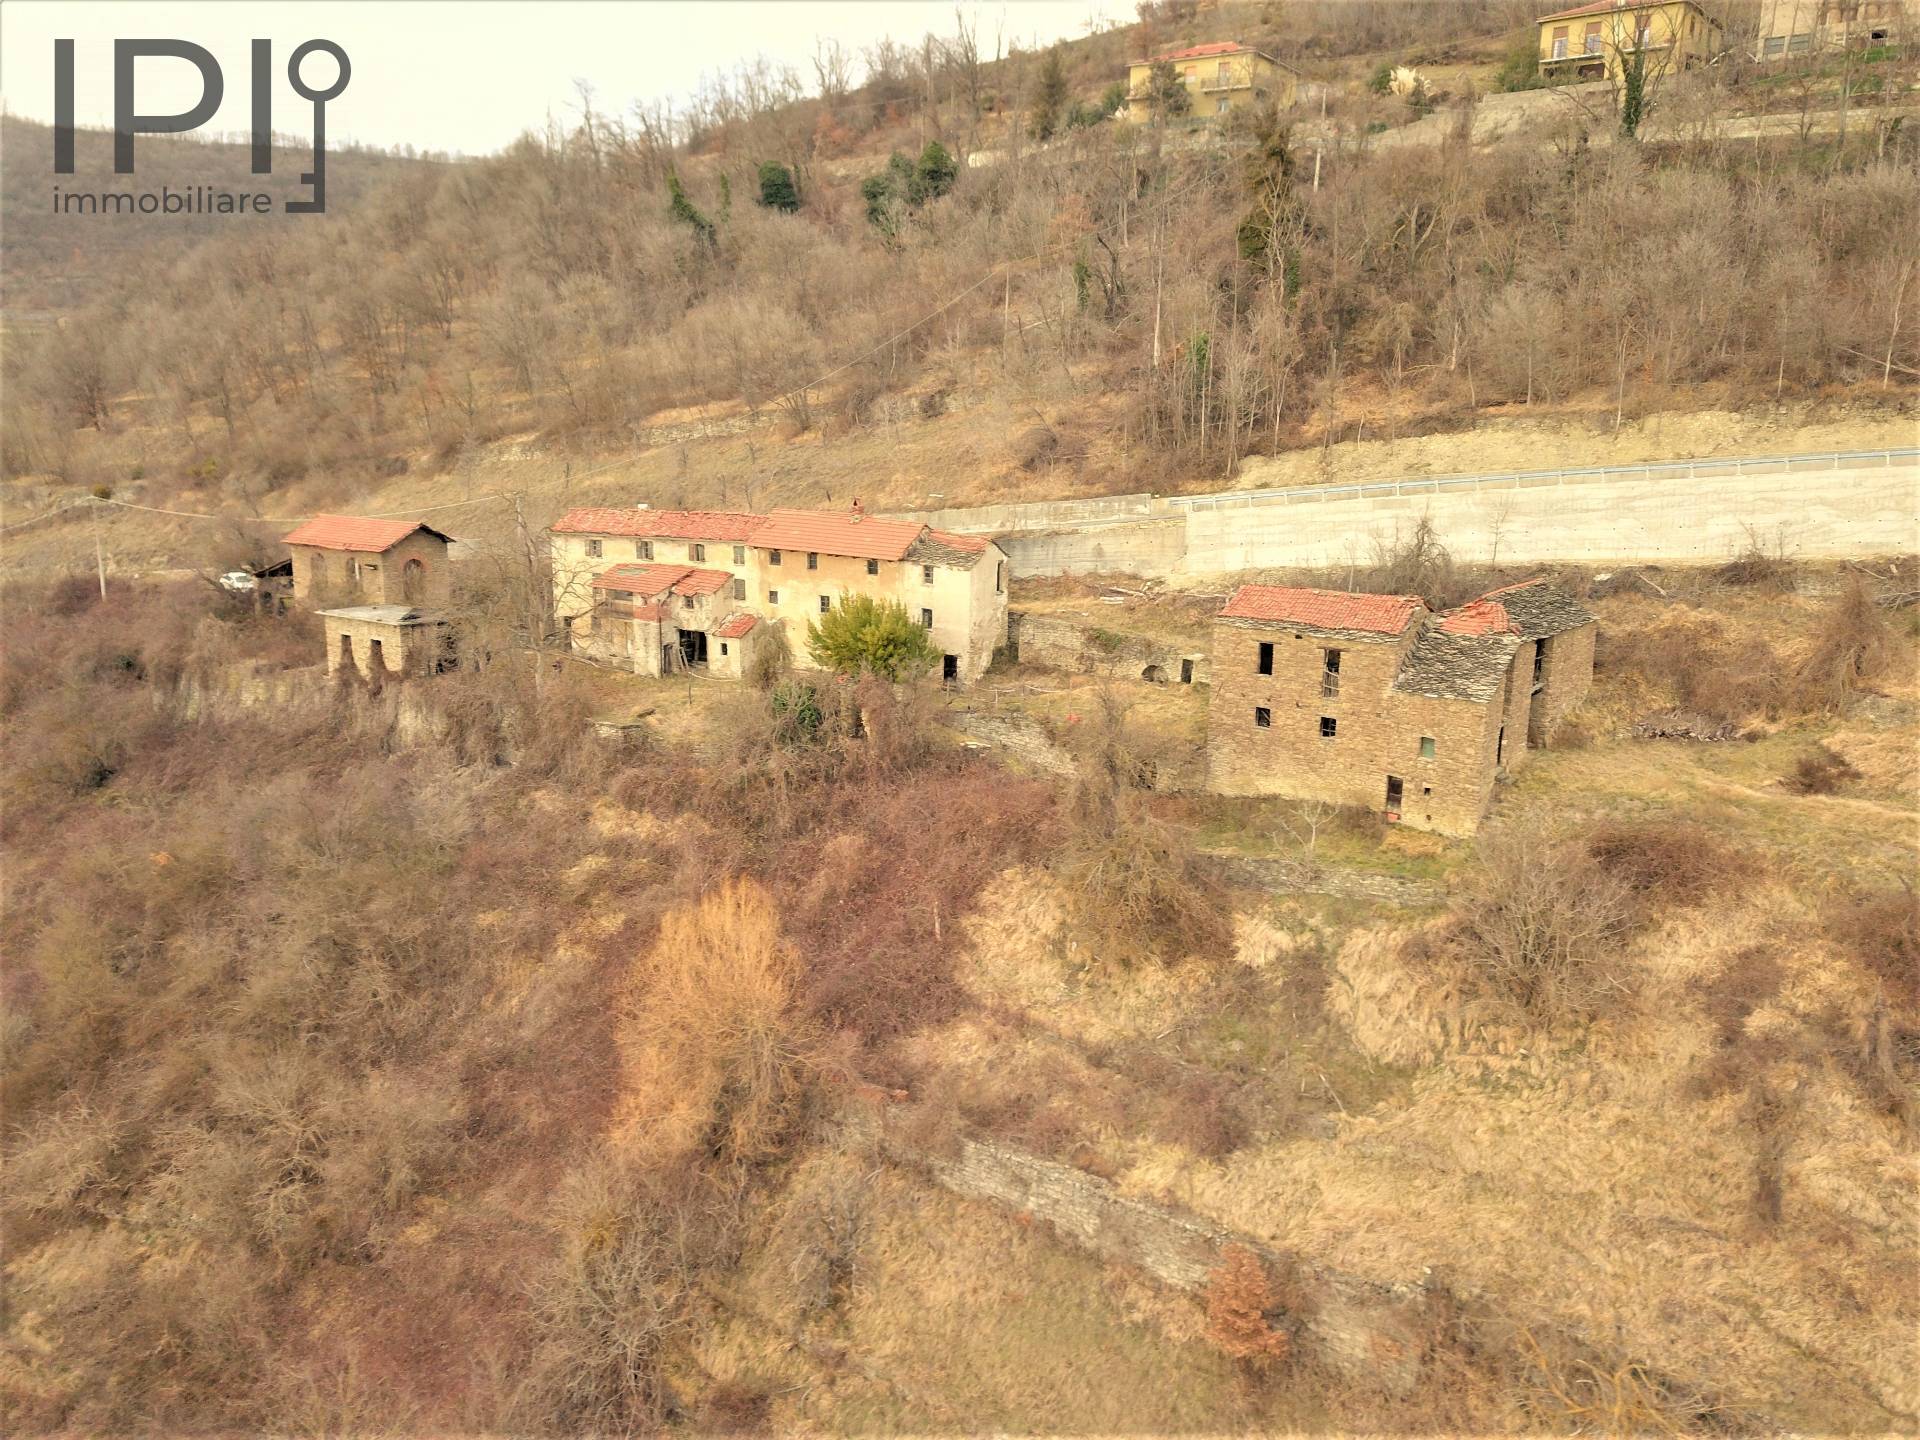 Rustico / Casale in vendita a Saliceto, 12 locali, prezzo € 100.000 | PortaleAgenzieImmobiliari.it